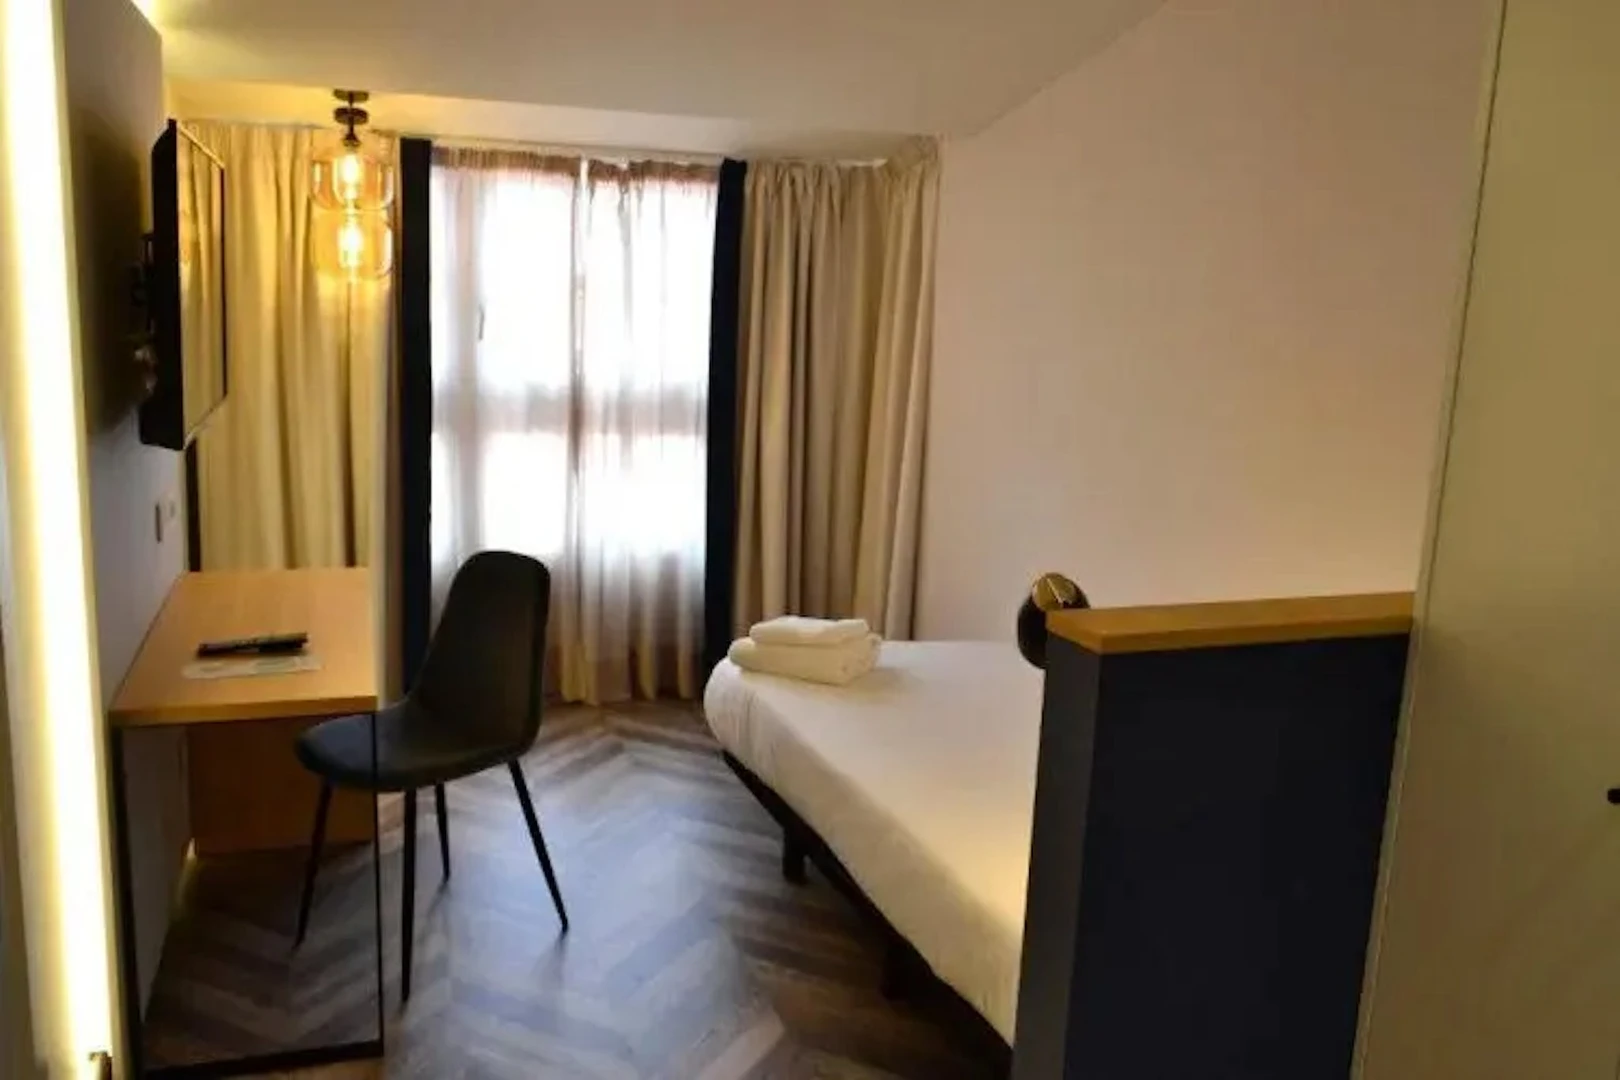 A Coruña içinde 3 yatak odalı konaklama